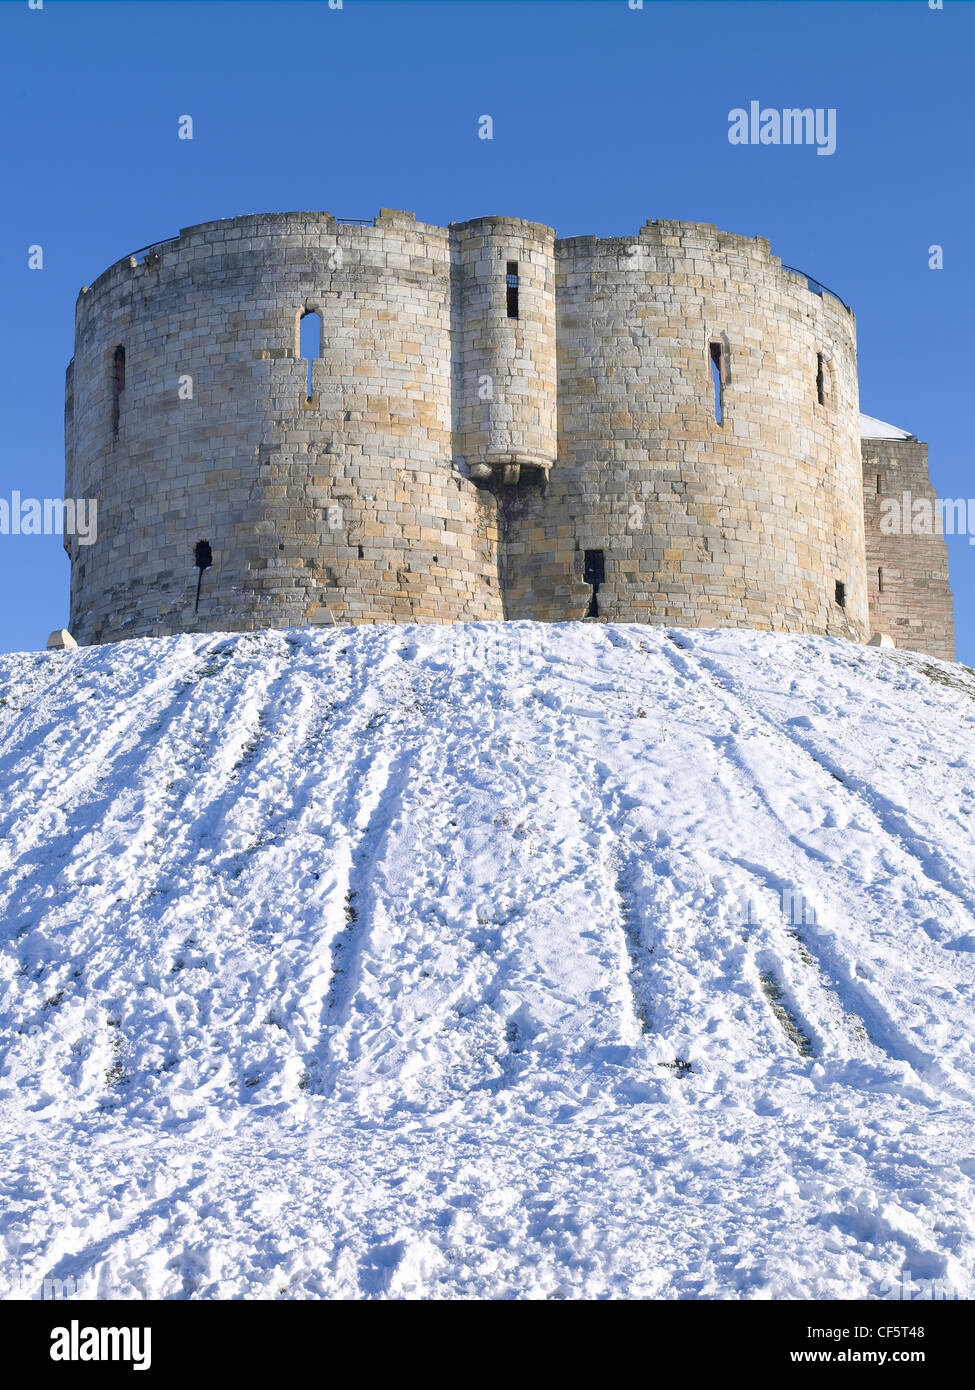 Clifford's Tower, un donjon de pierre construit au 13ème siècle, au sommet d'une motte recouverte de neige. Banque D'Images